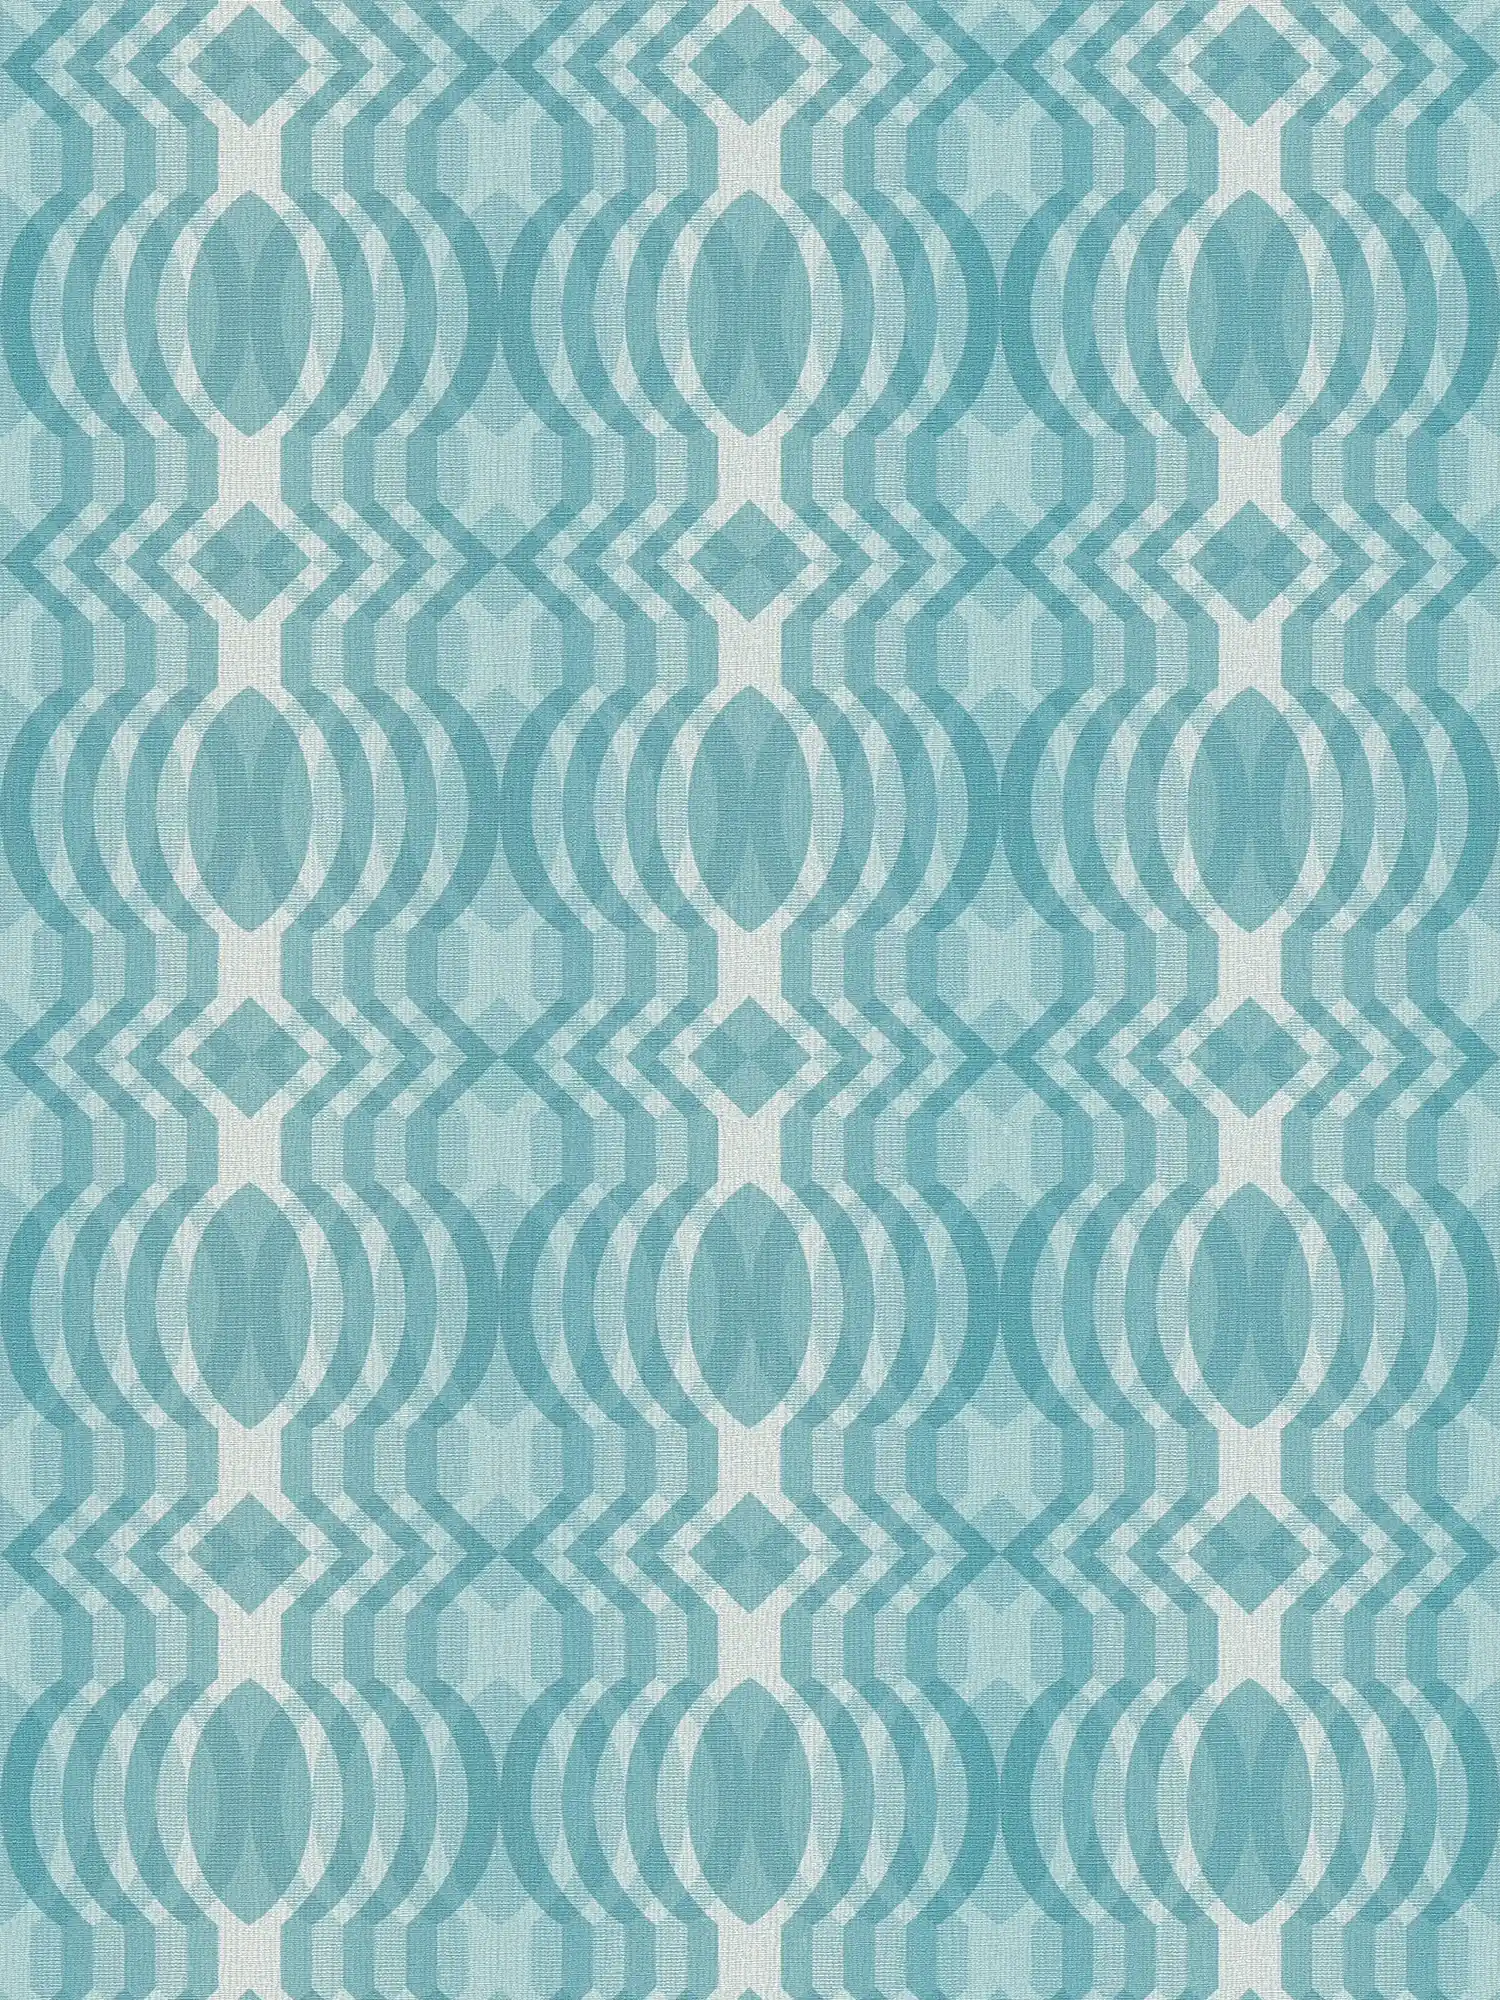 Retro behang met geometrisch patroon - blauw, crème, wit
